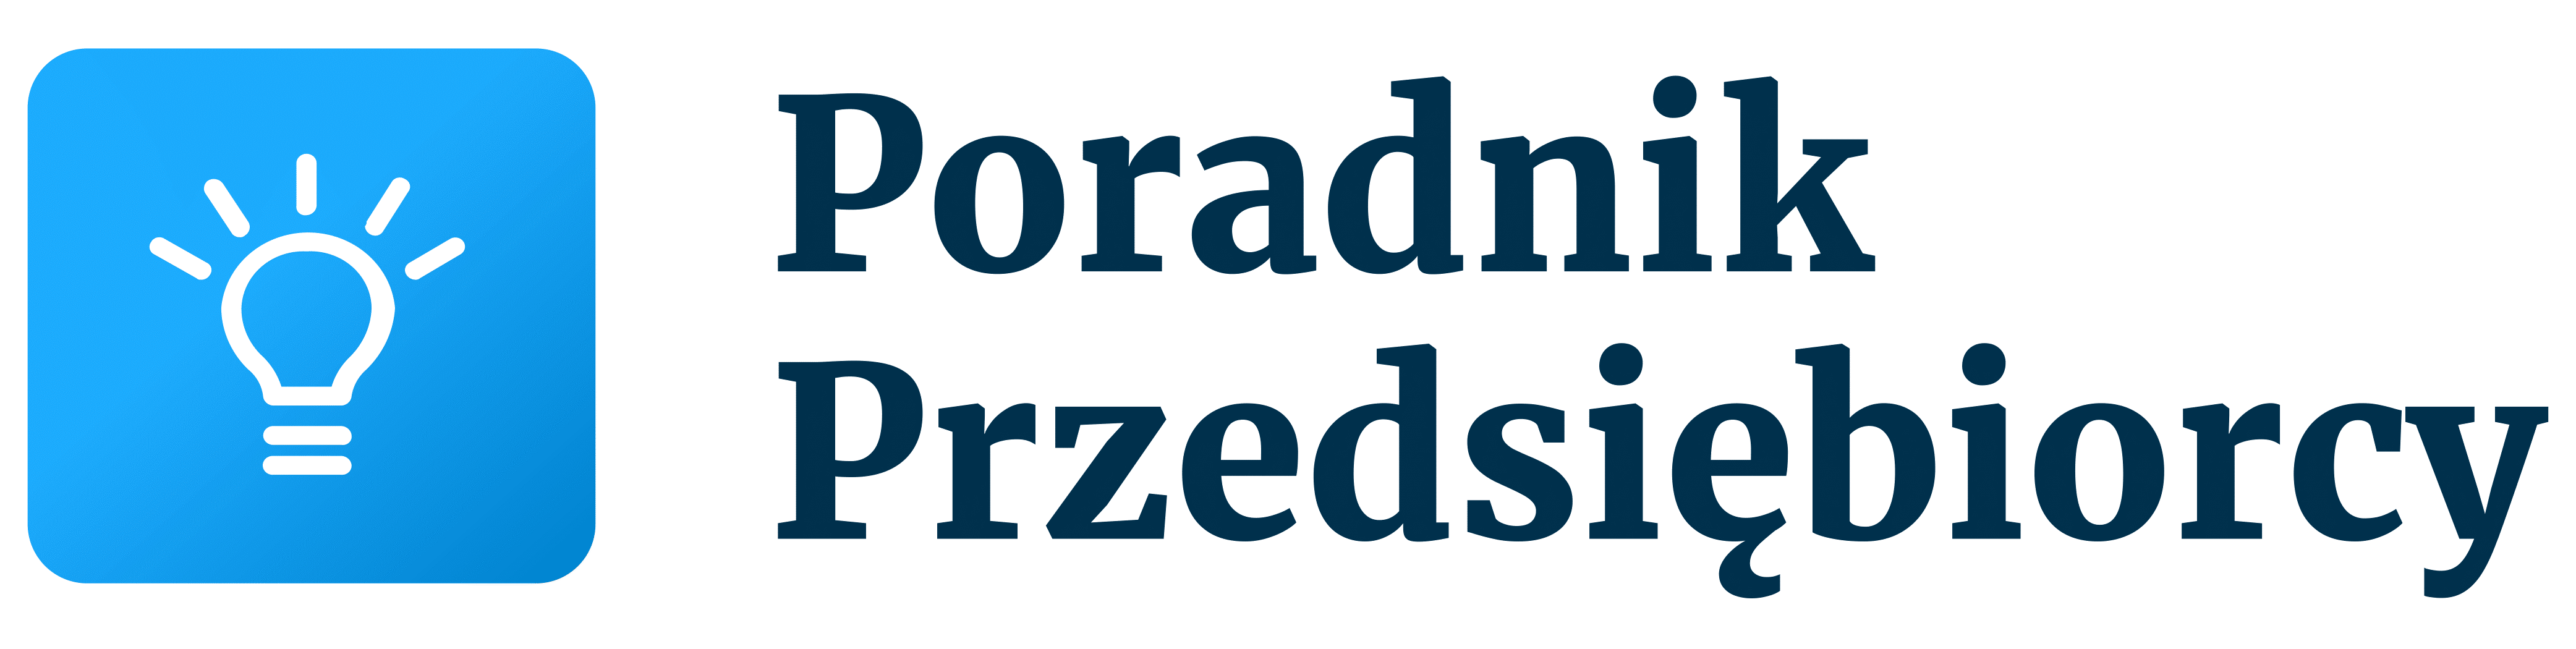 Poradnik Przedsiebiorcy logo